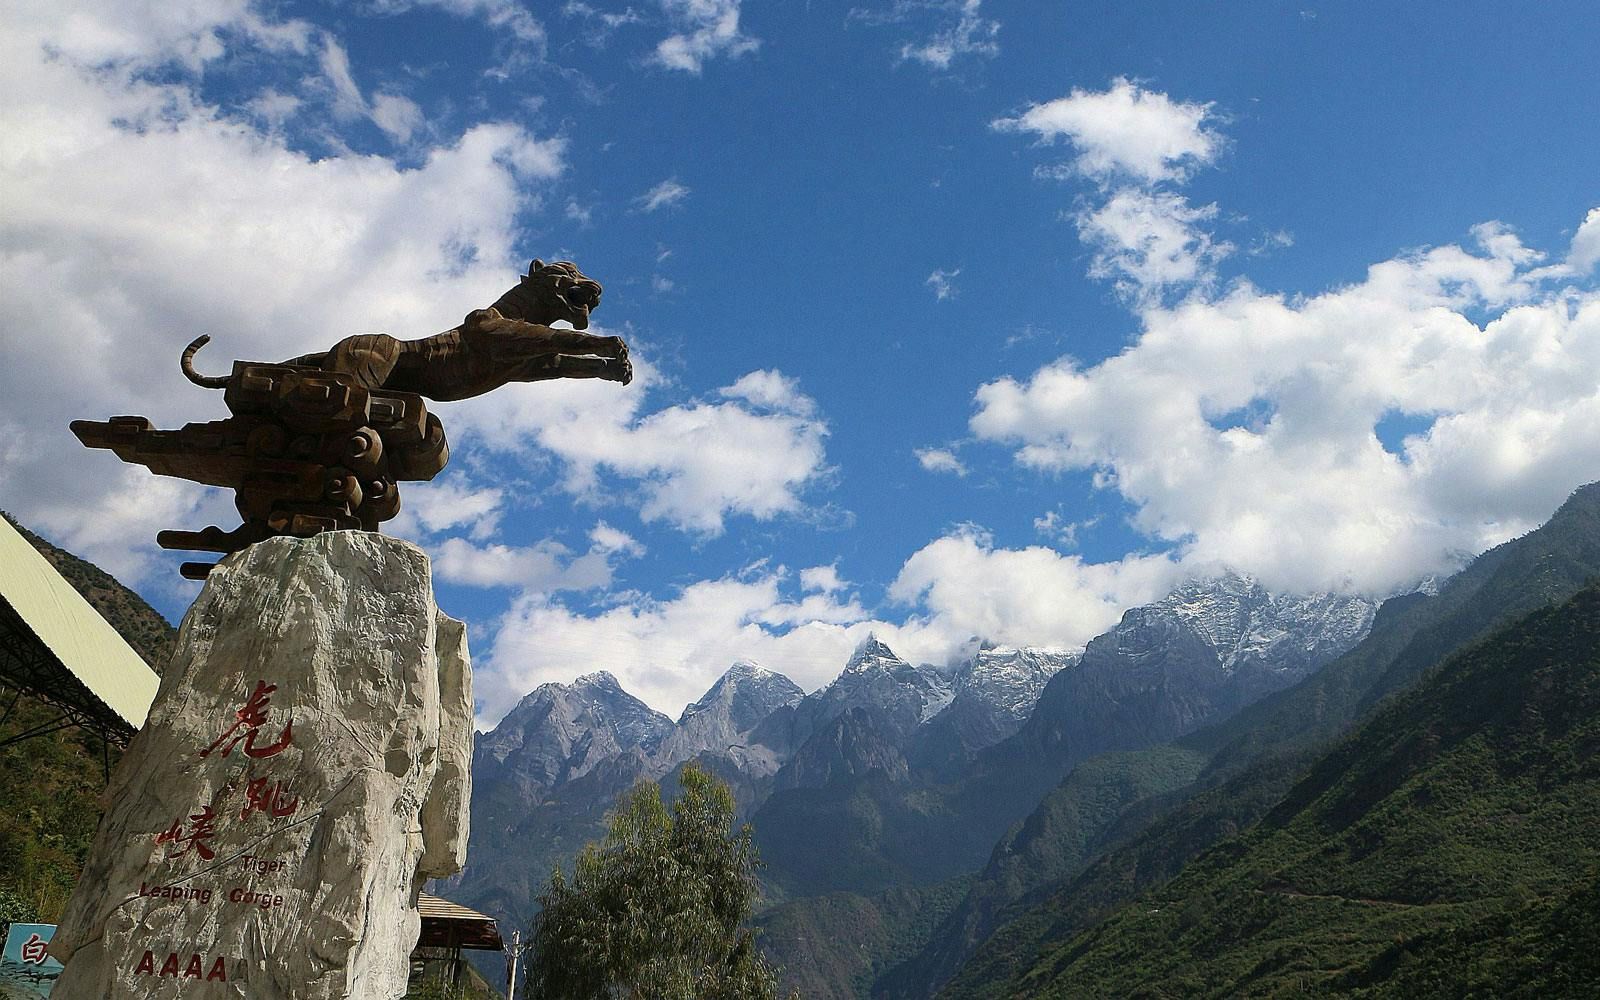 Imagen del tour: Recorrido fotográfico y turístico por el desfiladero desde Lijiang